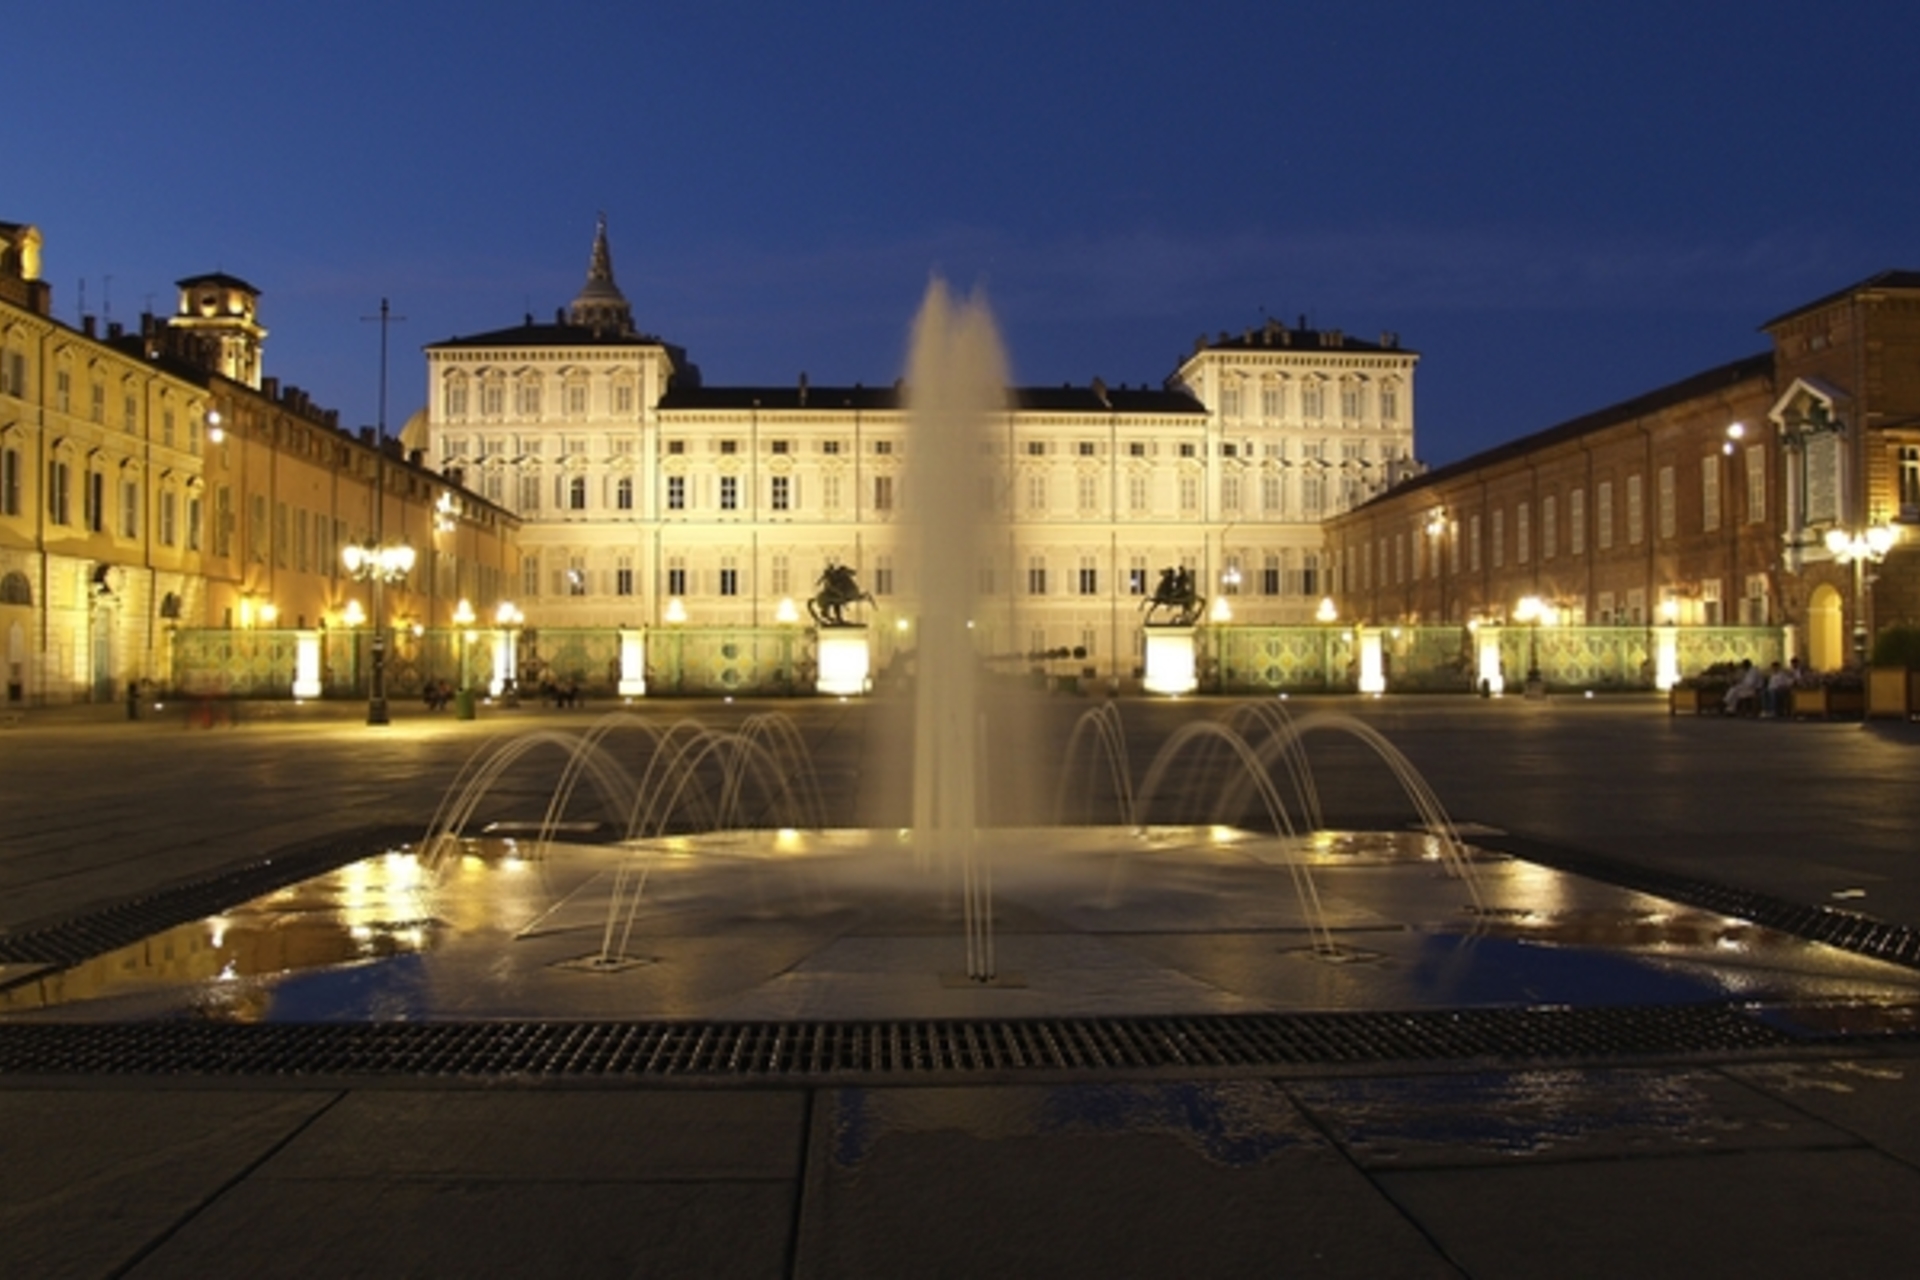 Musei Reali Torino: un percorso museale lungo 3 km